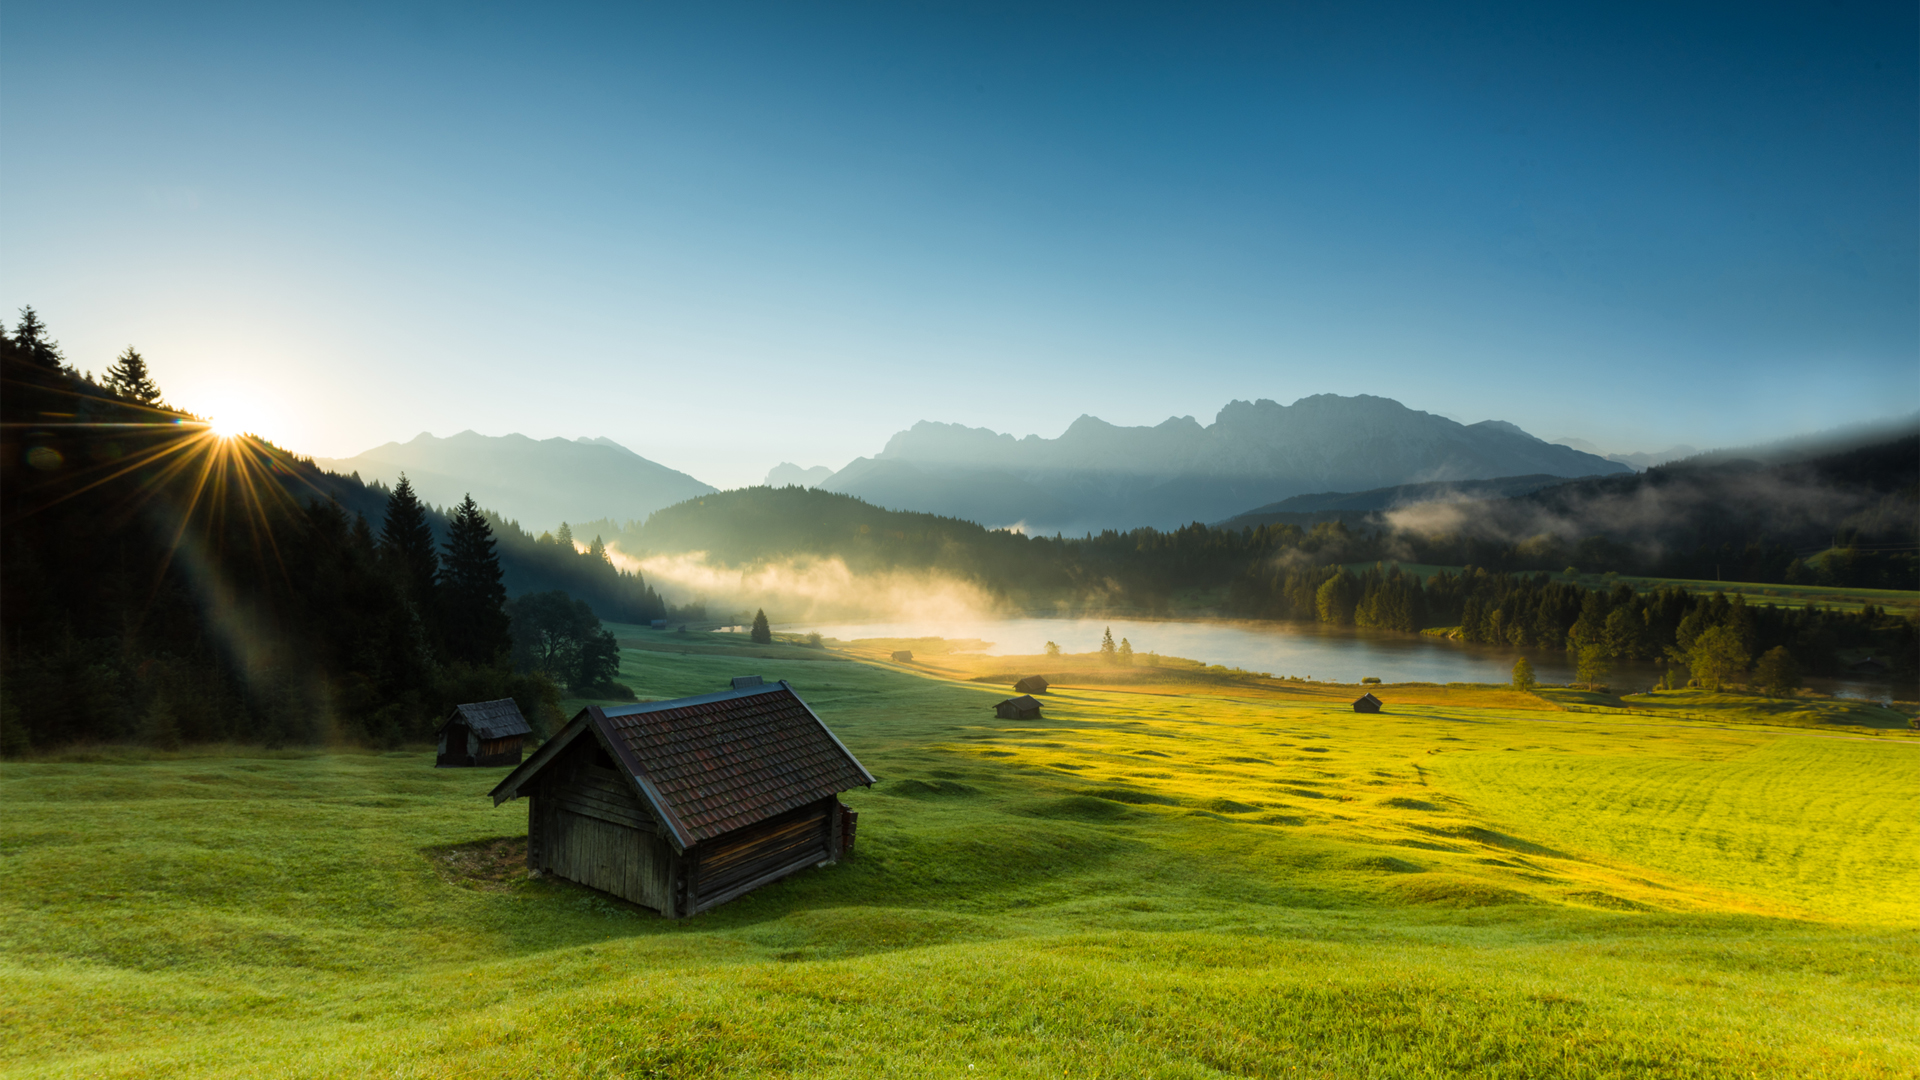 早晨 日出 巴伐利亚 阿尔卑斯山 木屋房子 湖 风景壁纸